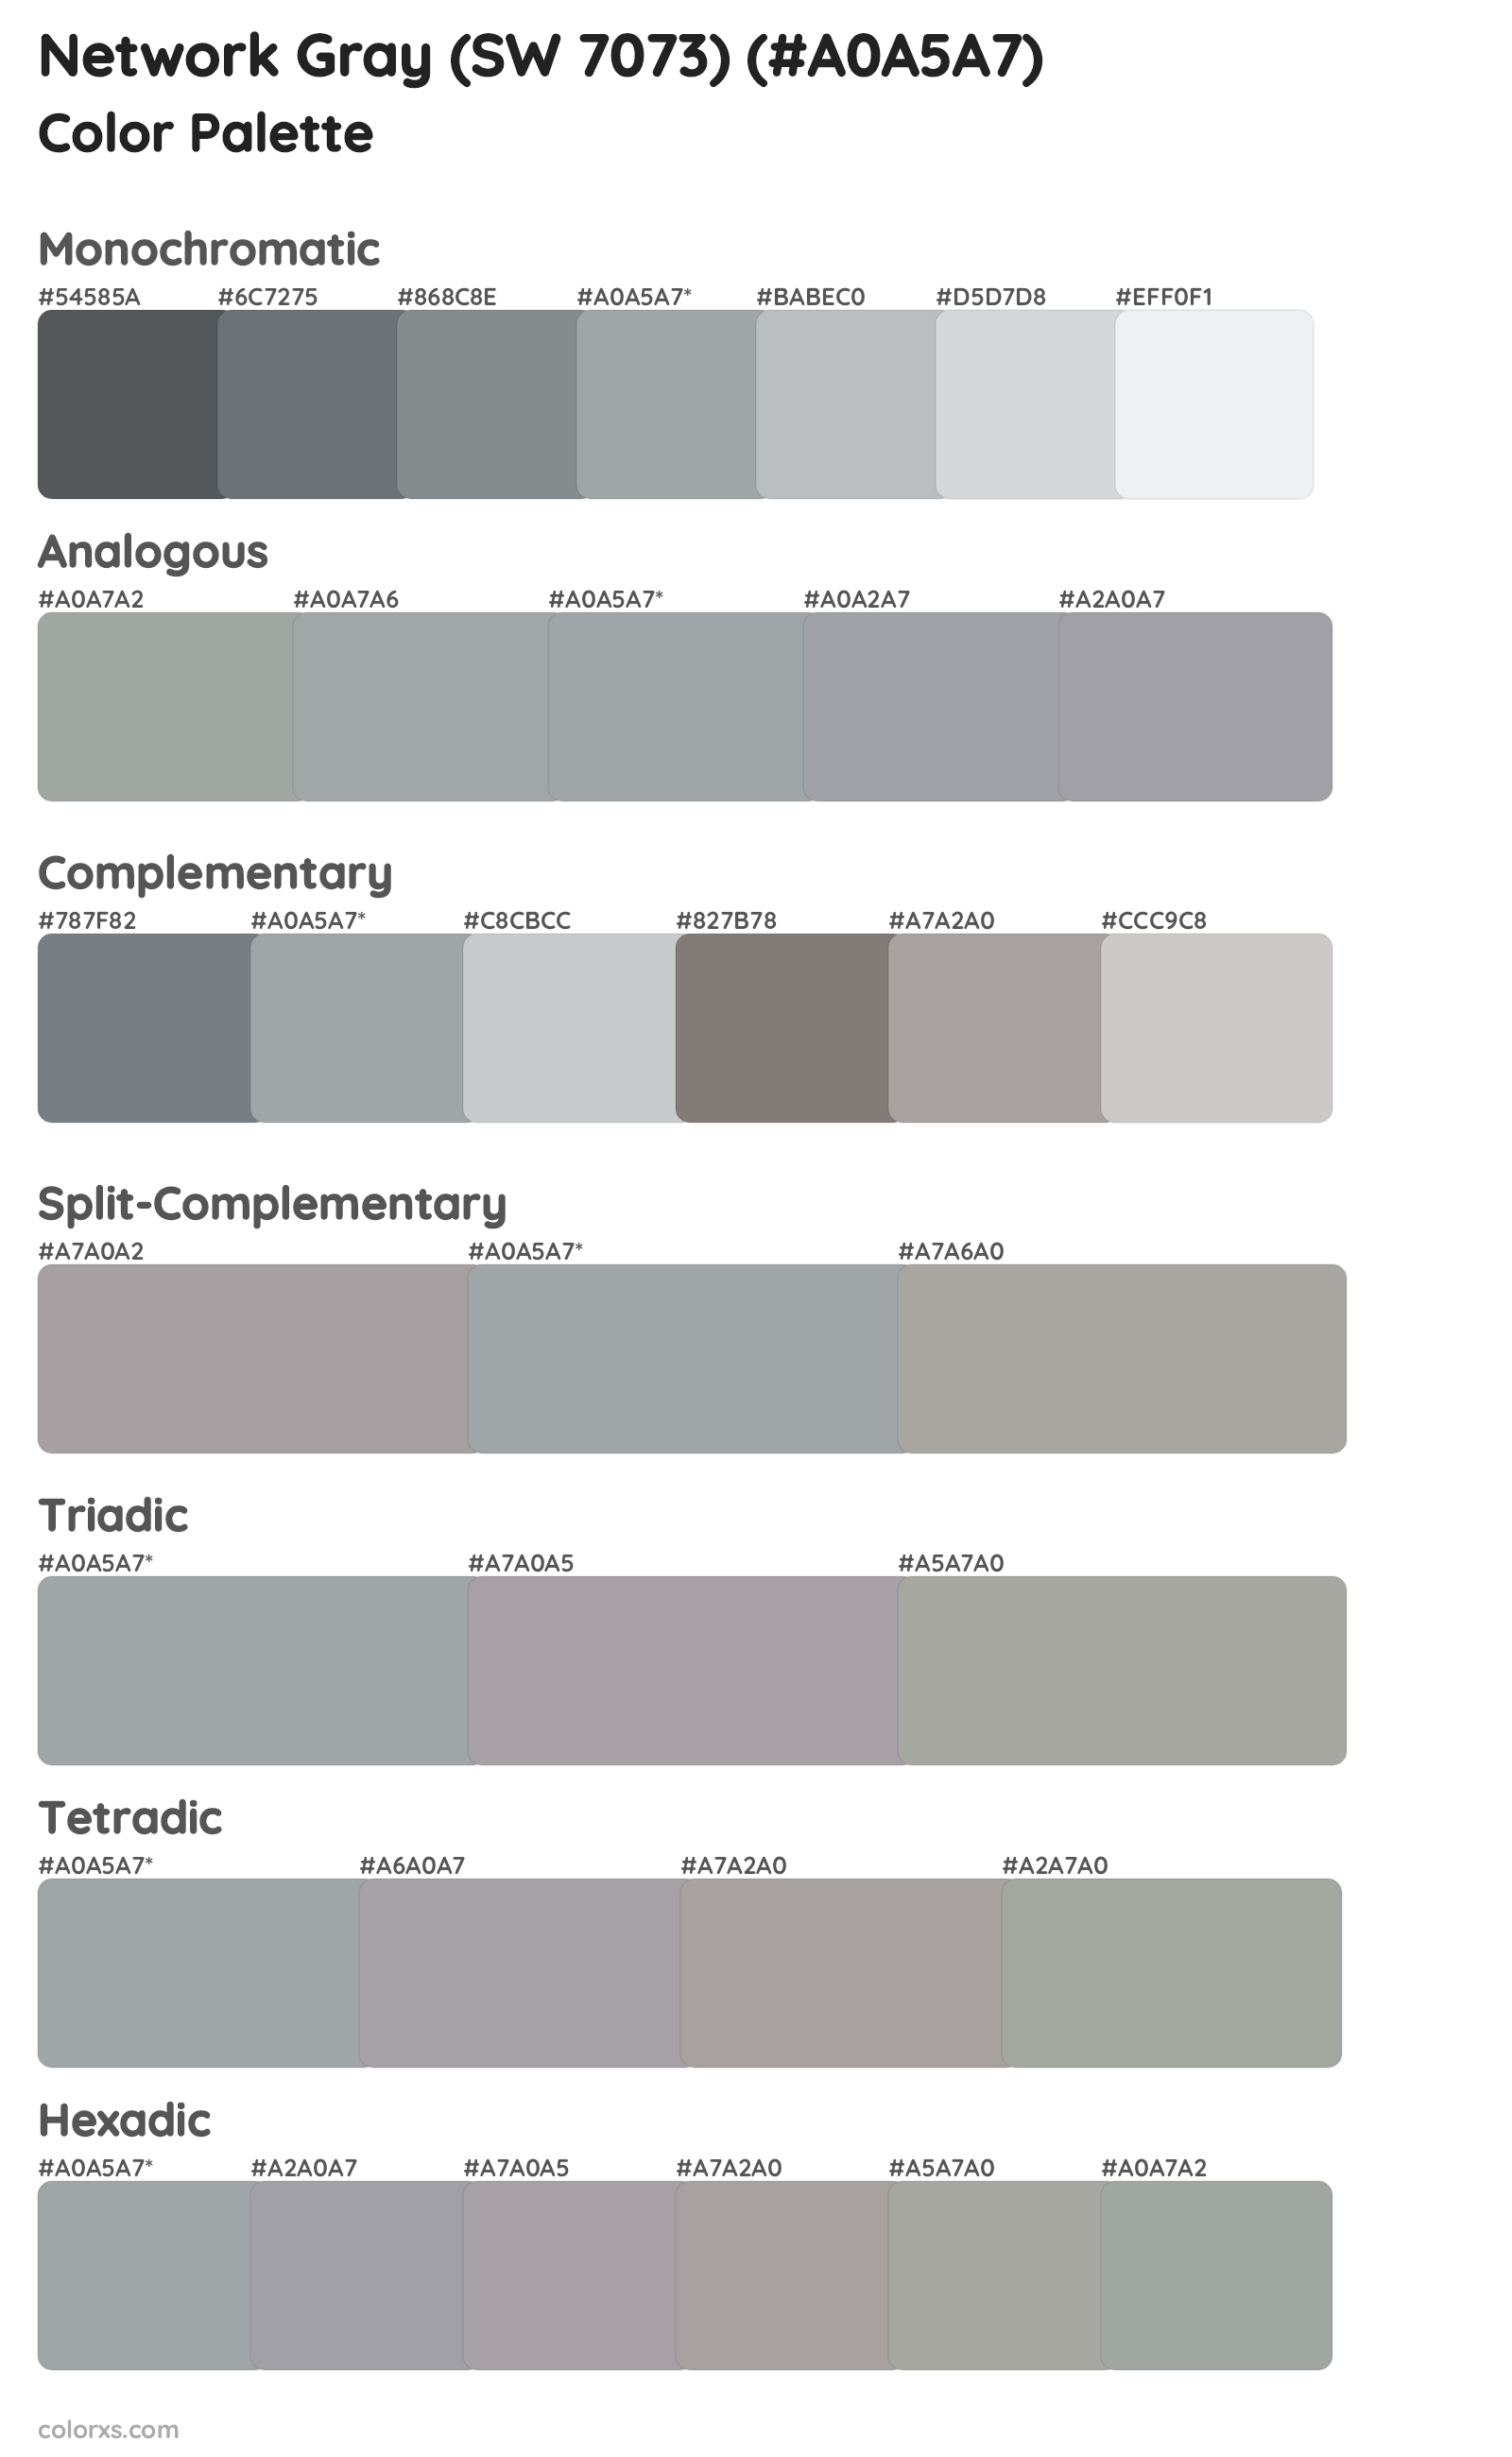 Network Gray (SW 7073) Color Scheme Palettes